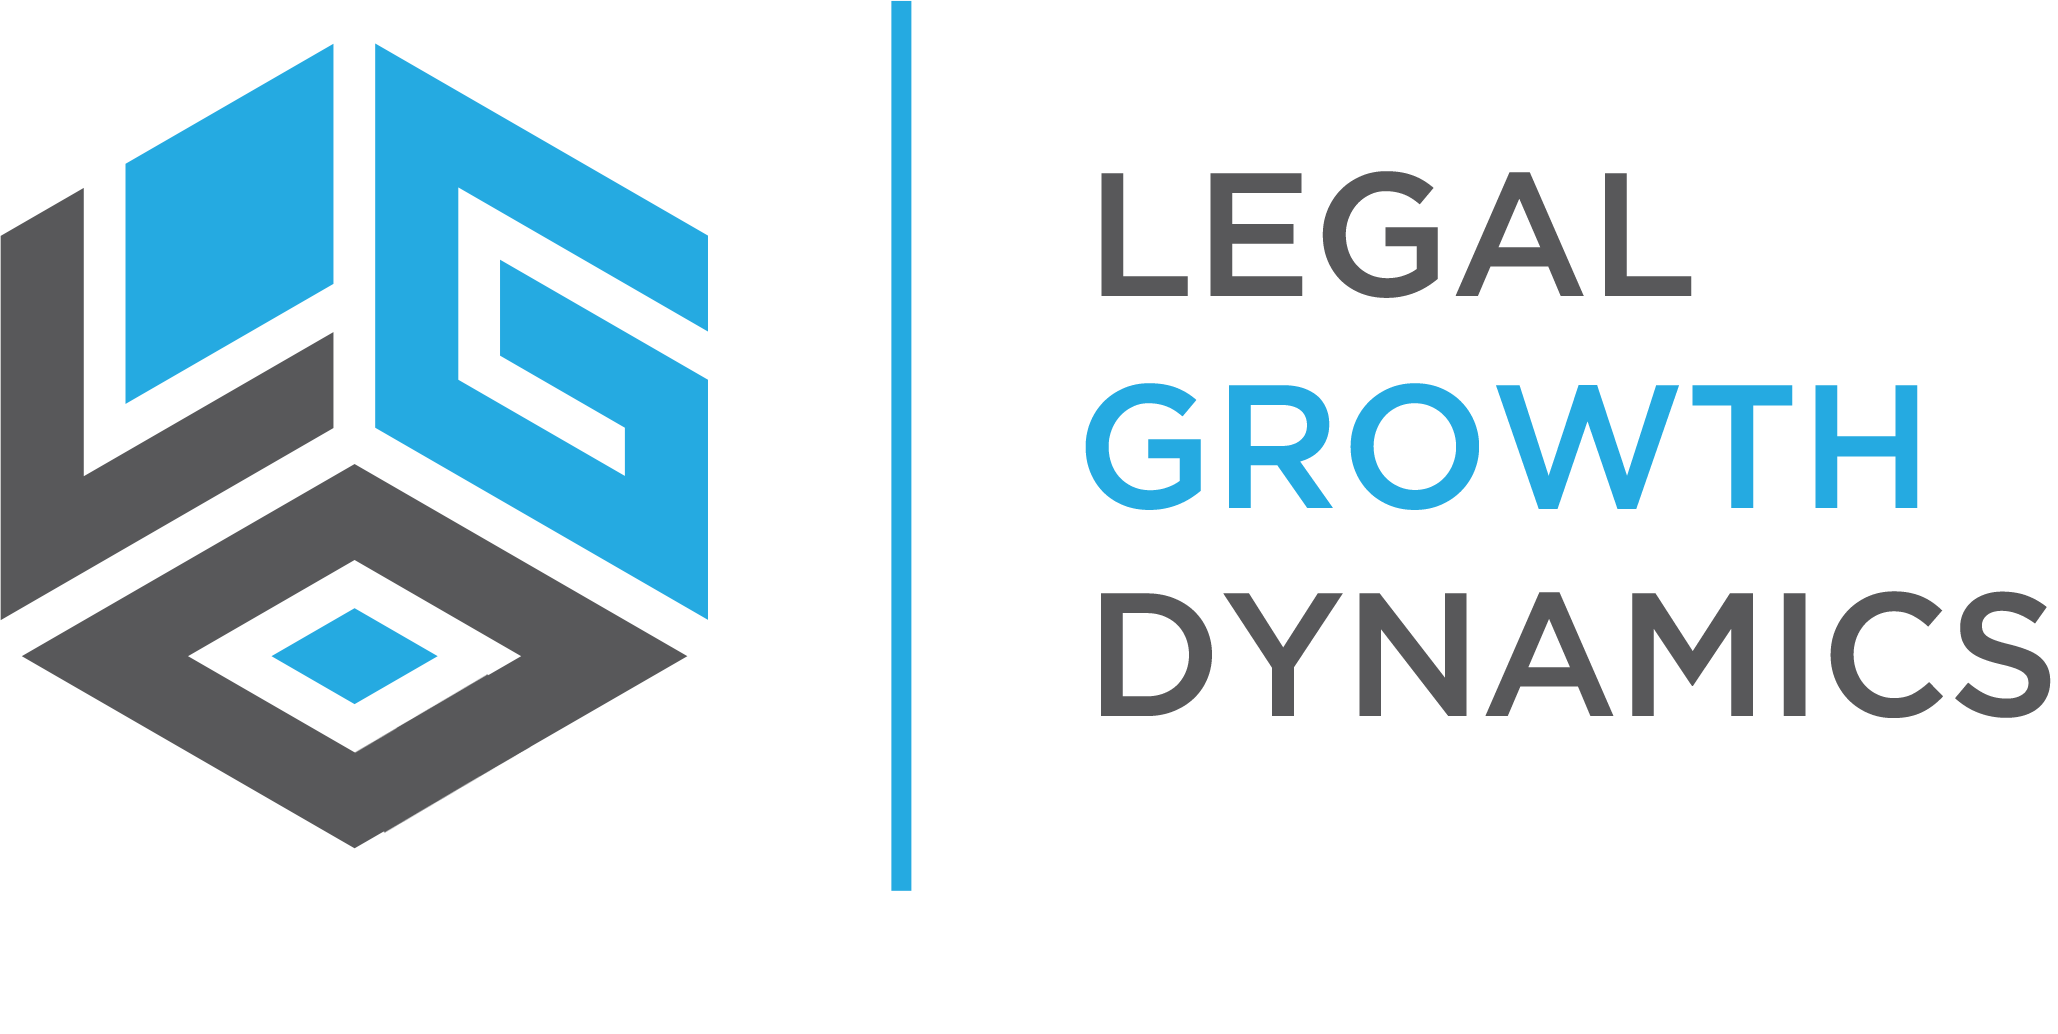 Law Firm Marketing | Legal Growth Dynamics